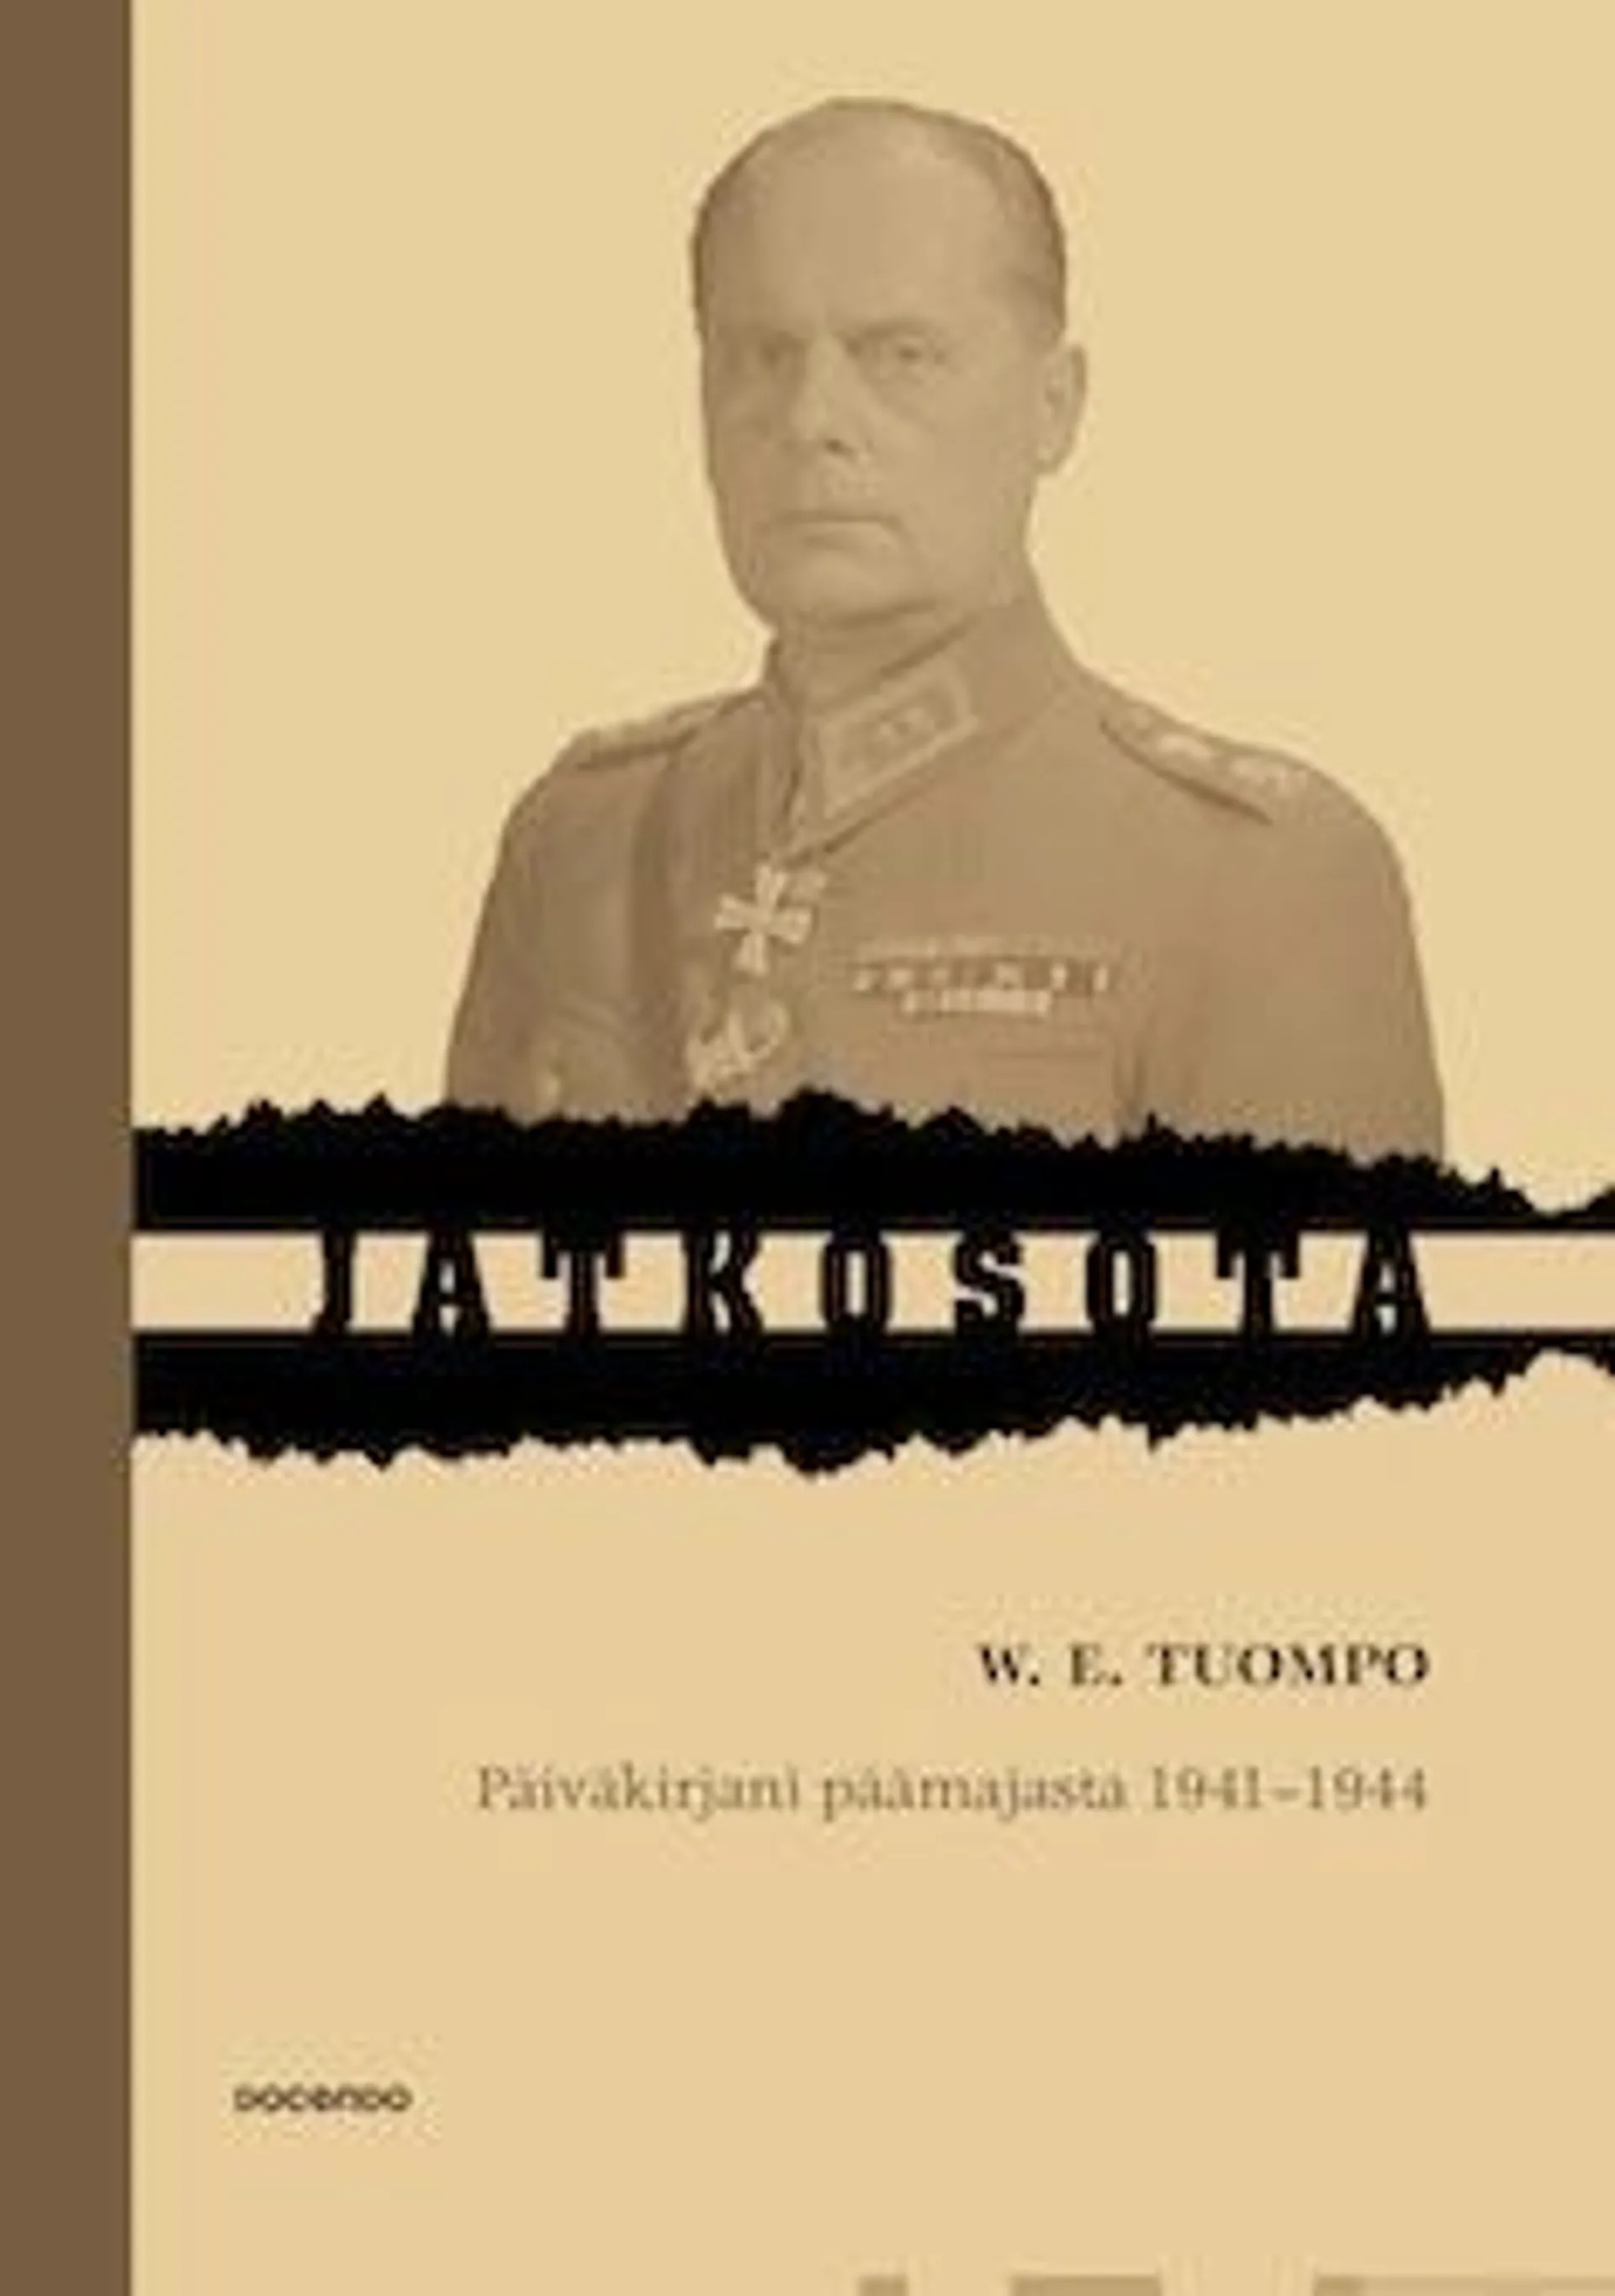 Tuompo, Päiväkirjani päämajasta 1941-1944